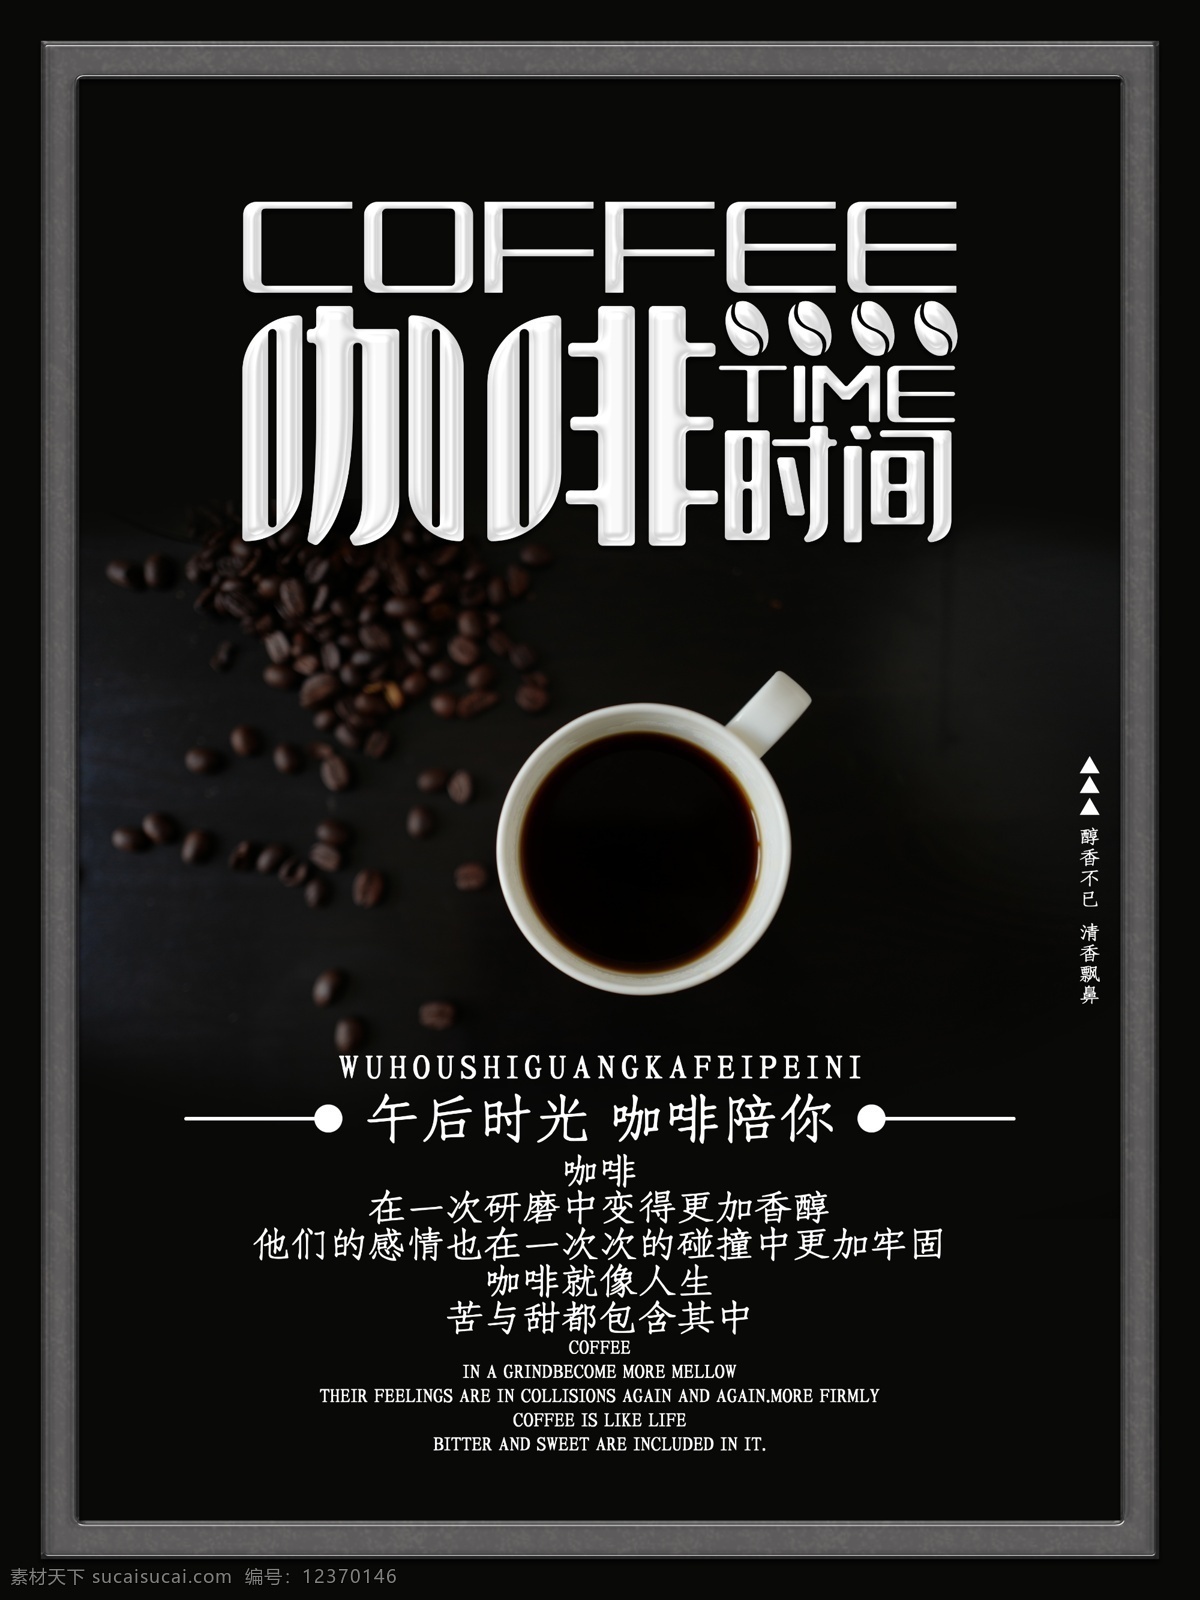 创意 字体 咖啡 时间 海报 创意字体 咖啡时间 醇香 美食